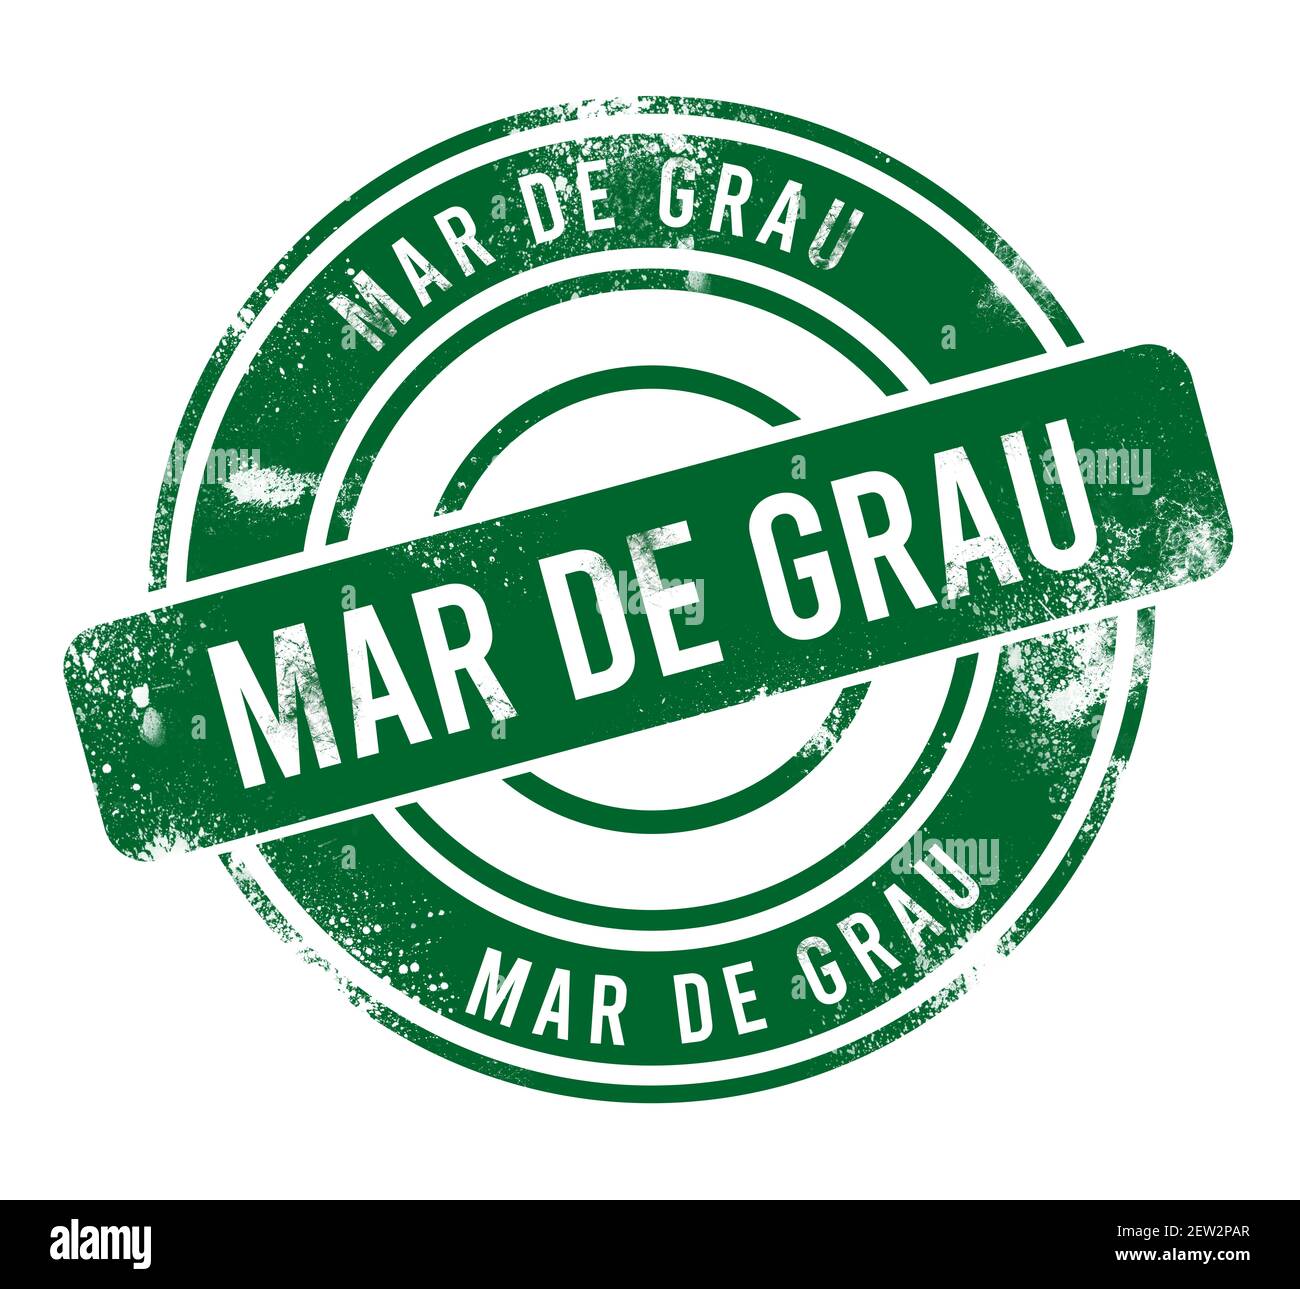 Mar de Grau - green round grunge button, stamp Stock Photo